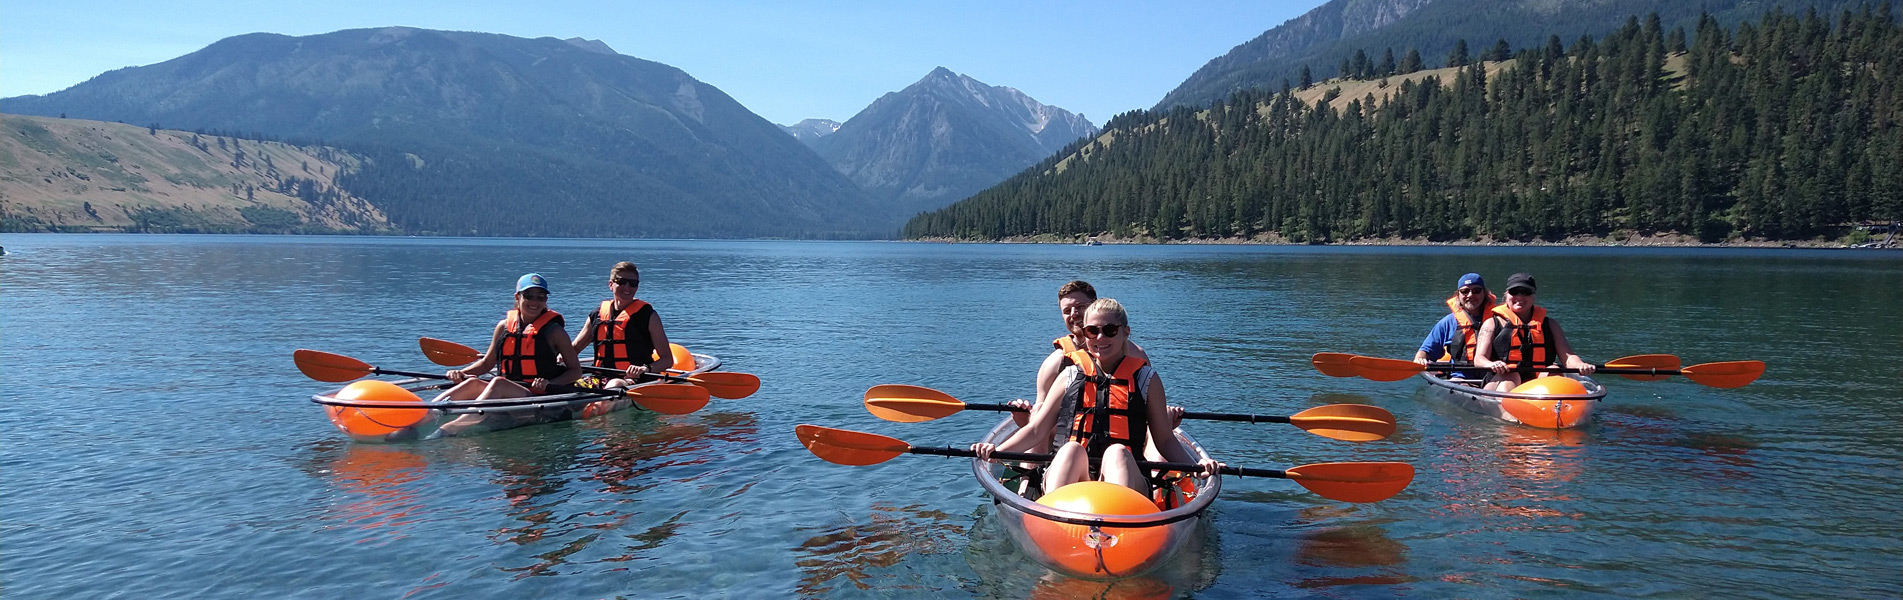 kayakers float on lake